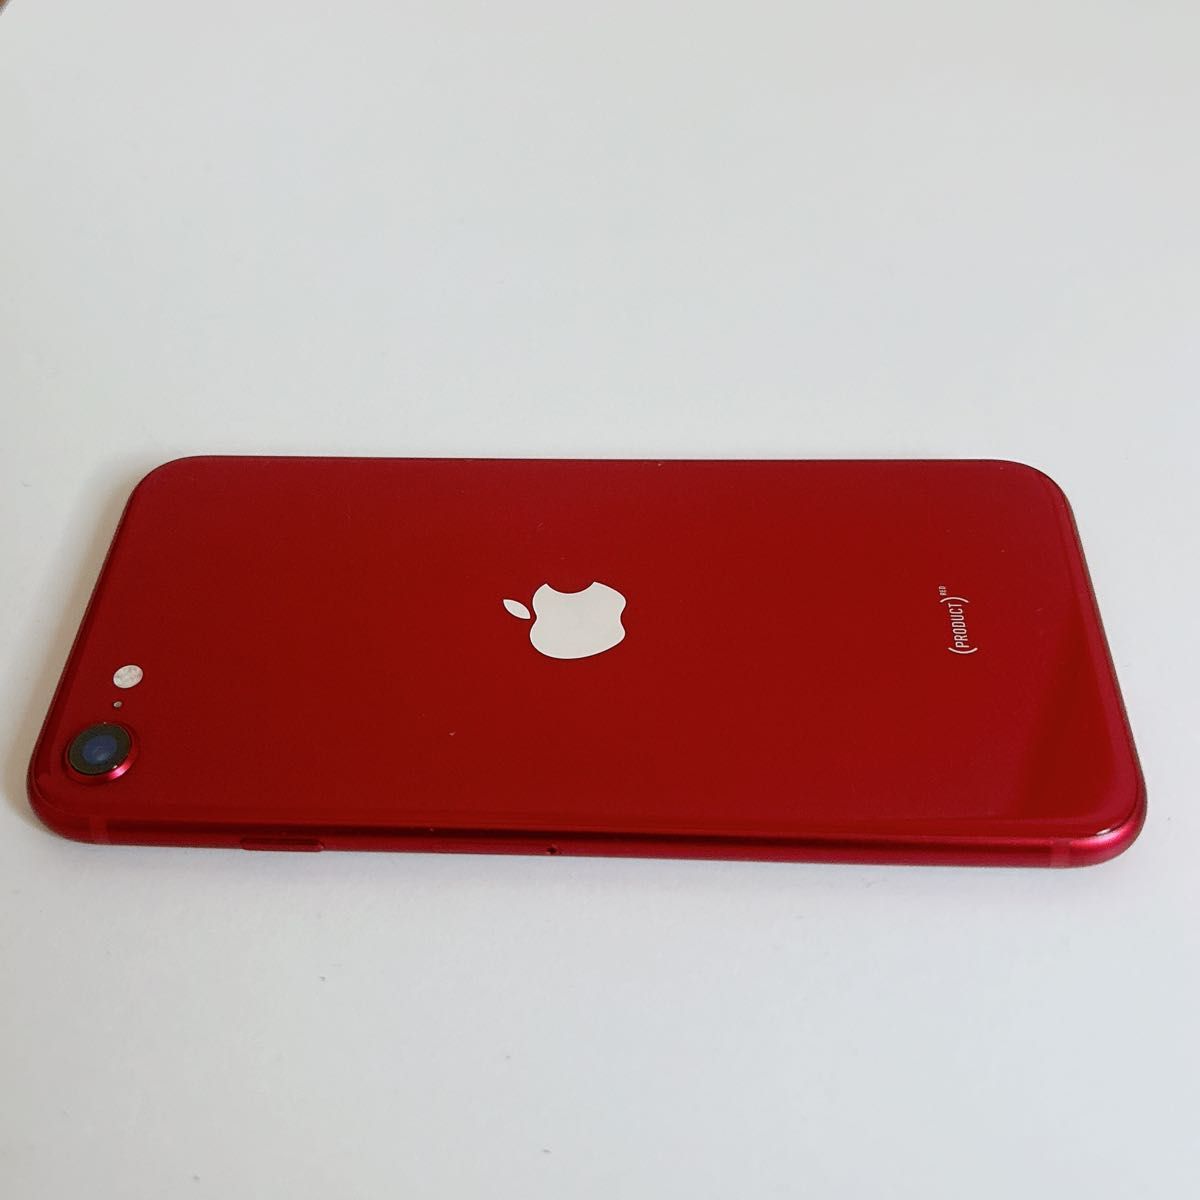 【美品】iPhone SE 第3世代 SE3 128GB レッド 箱・ケーブル付 89% Apple